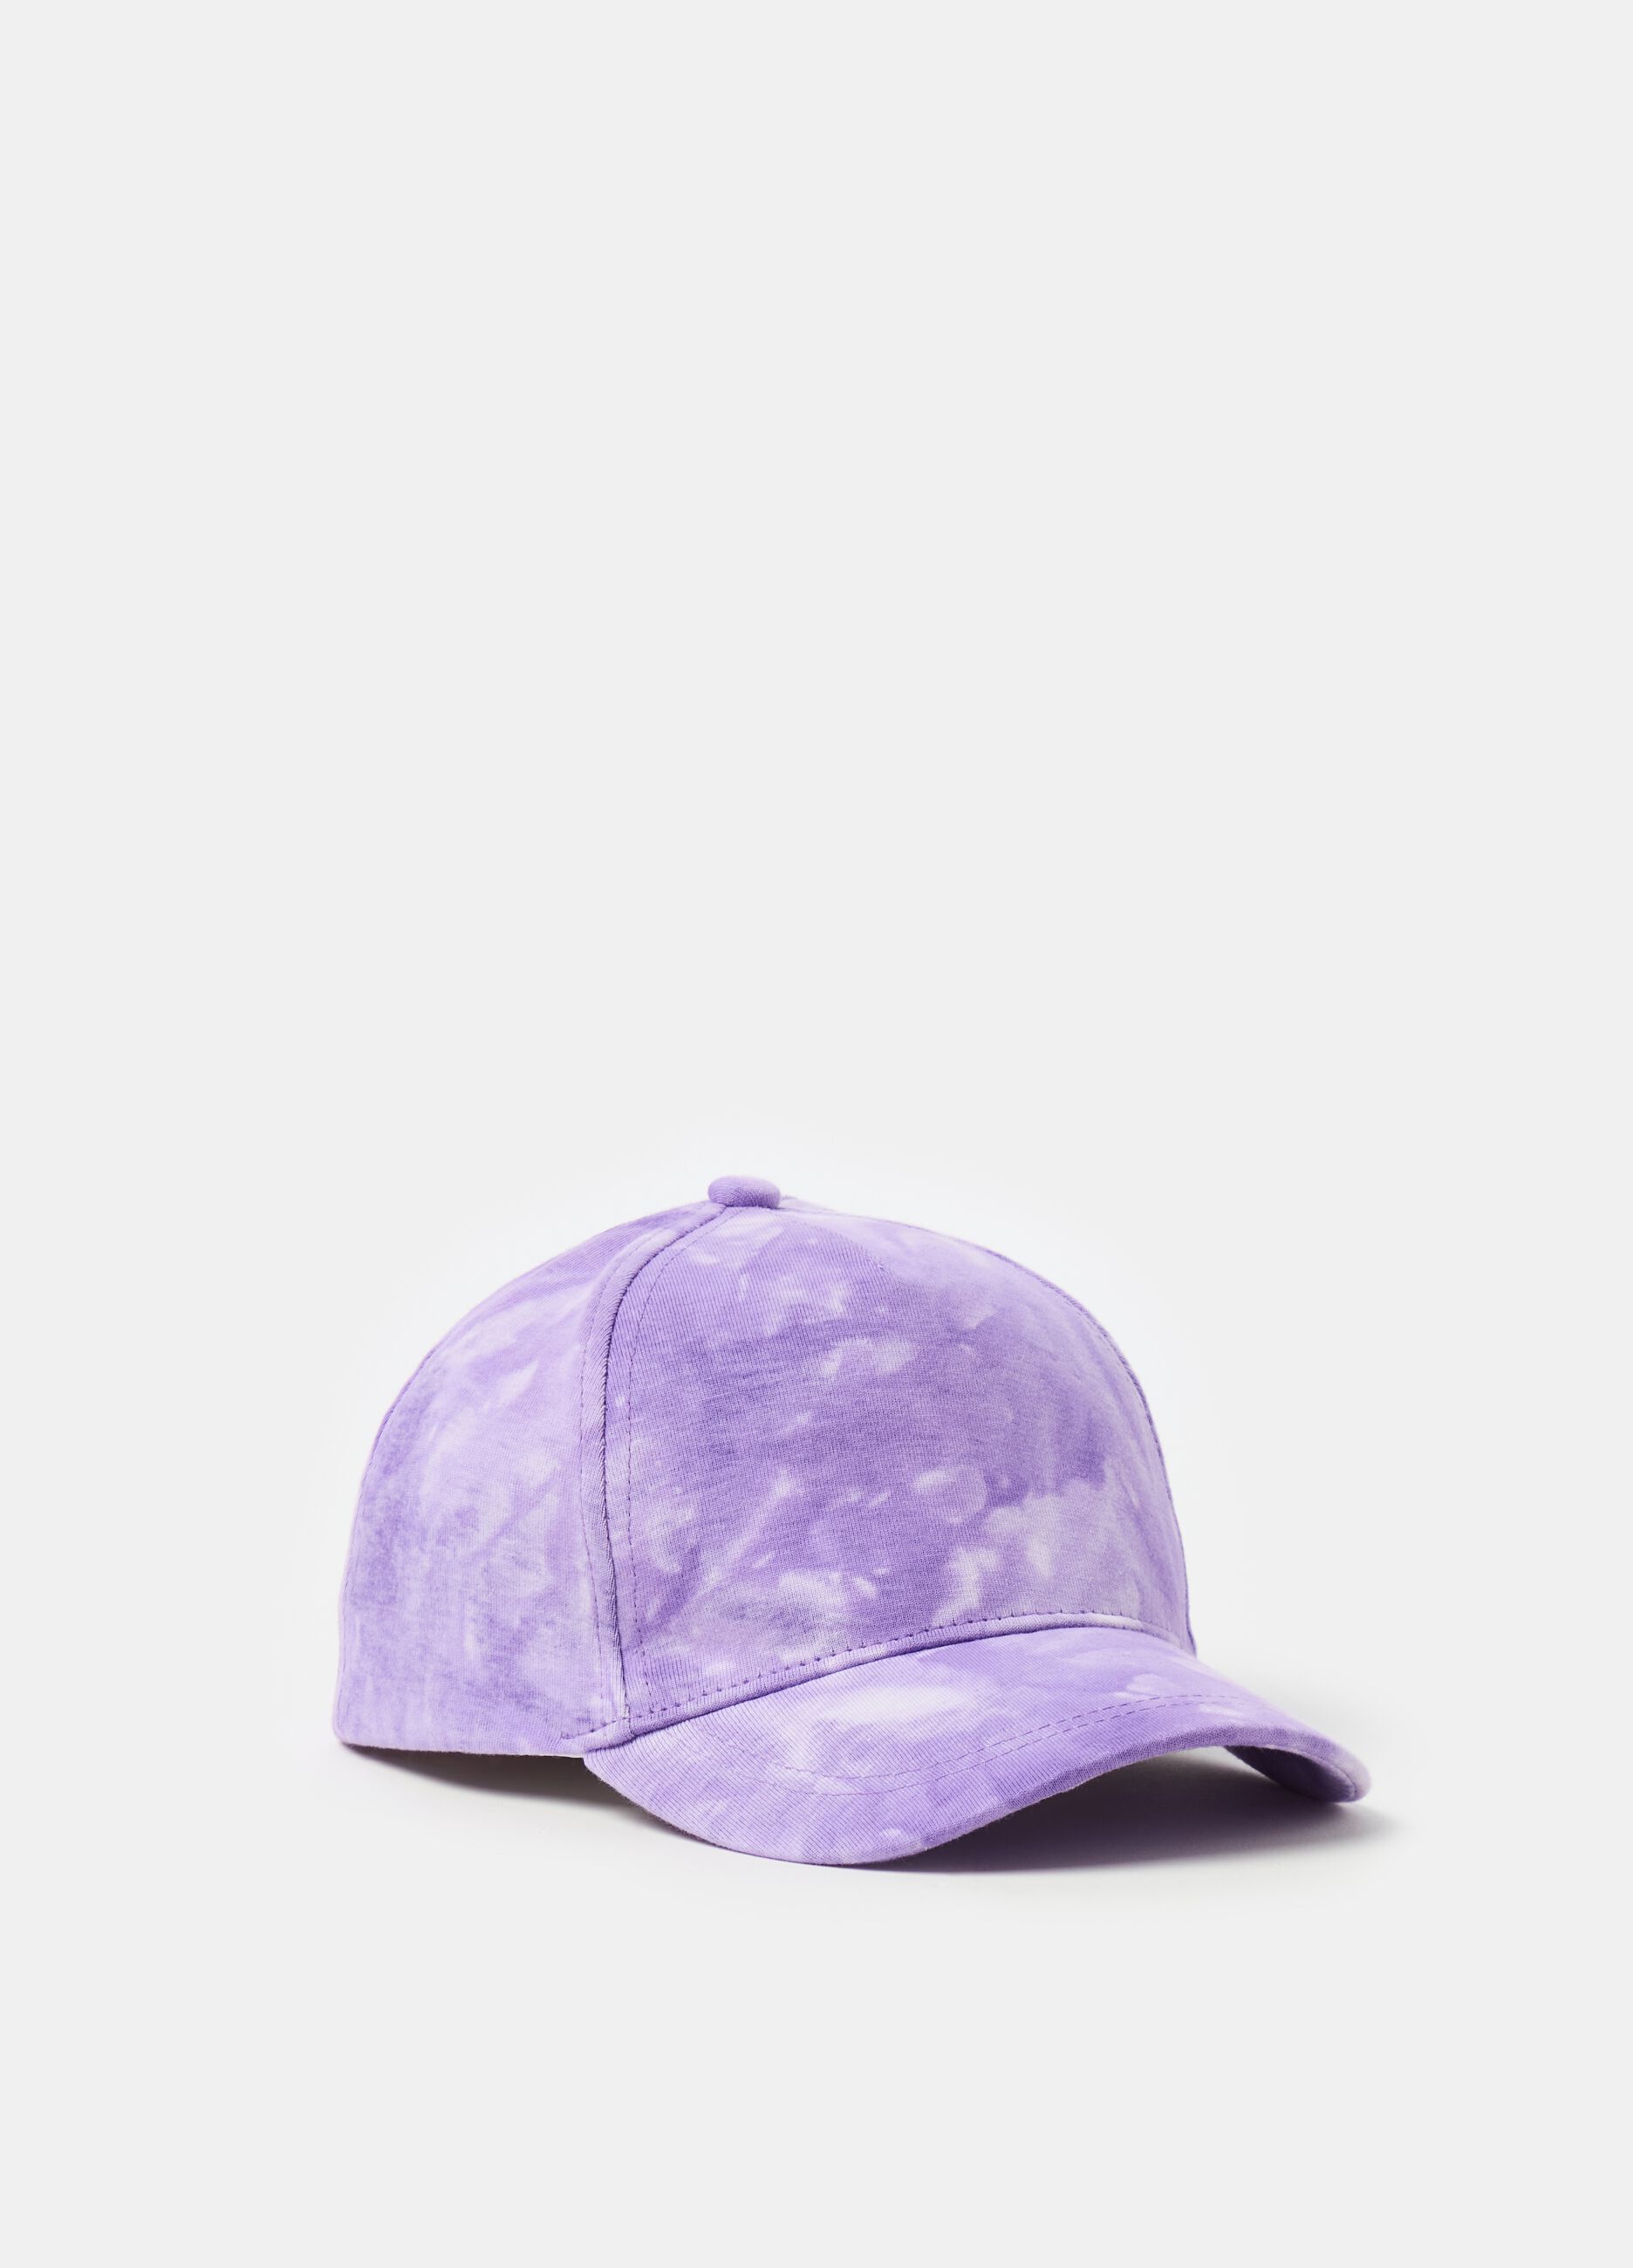 Tie Dye baseball cap